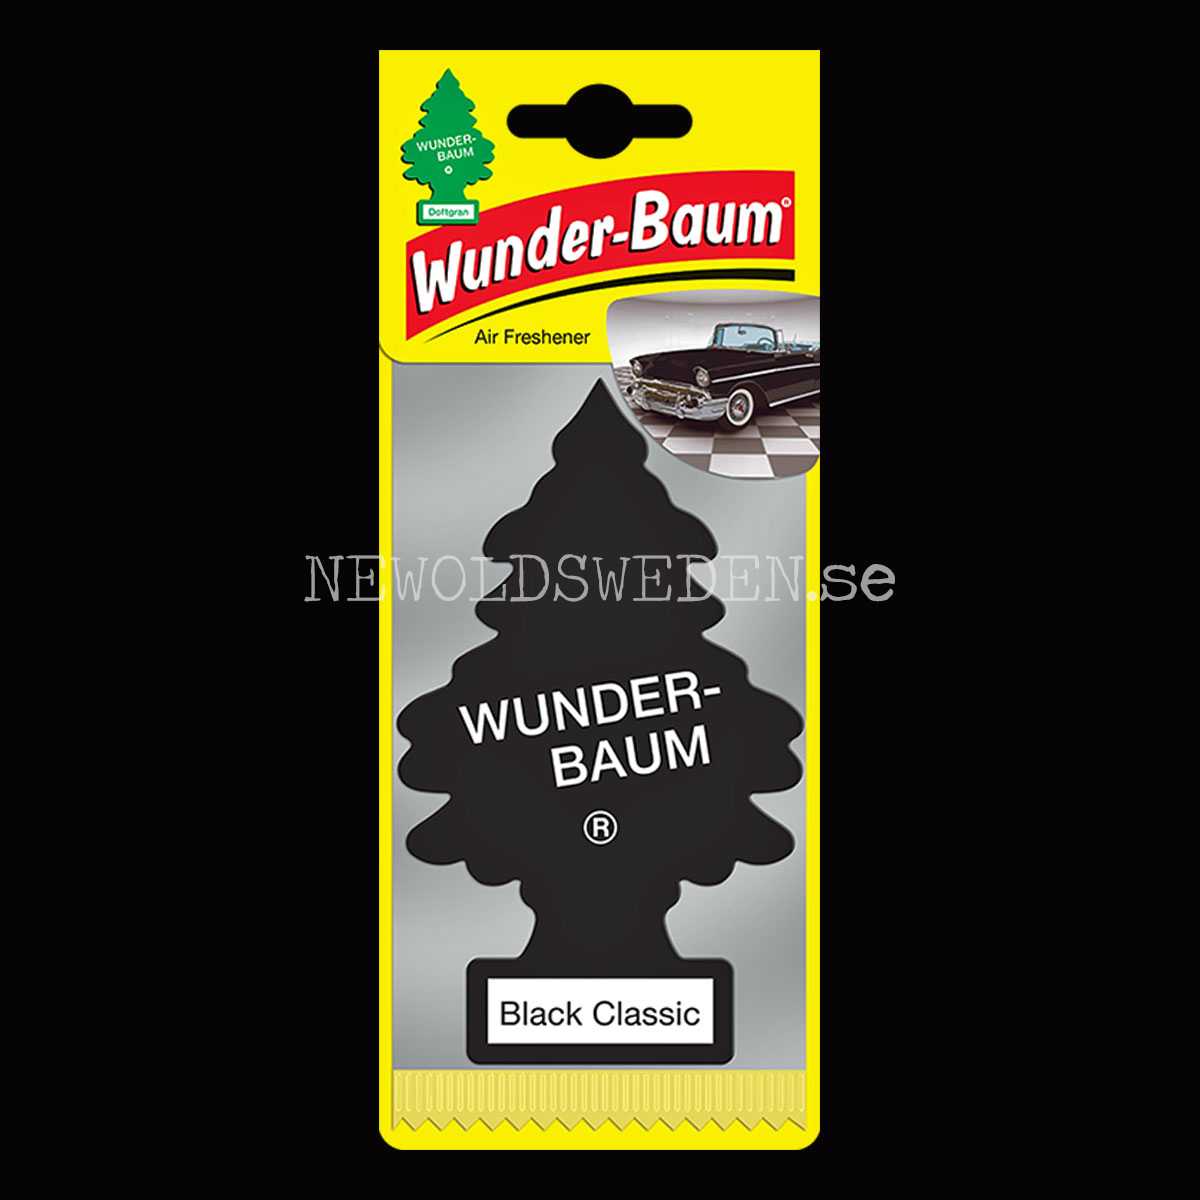 Wunderbaum Black Classic, WUUNDER-BAUM